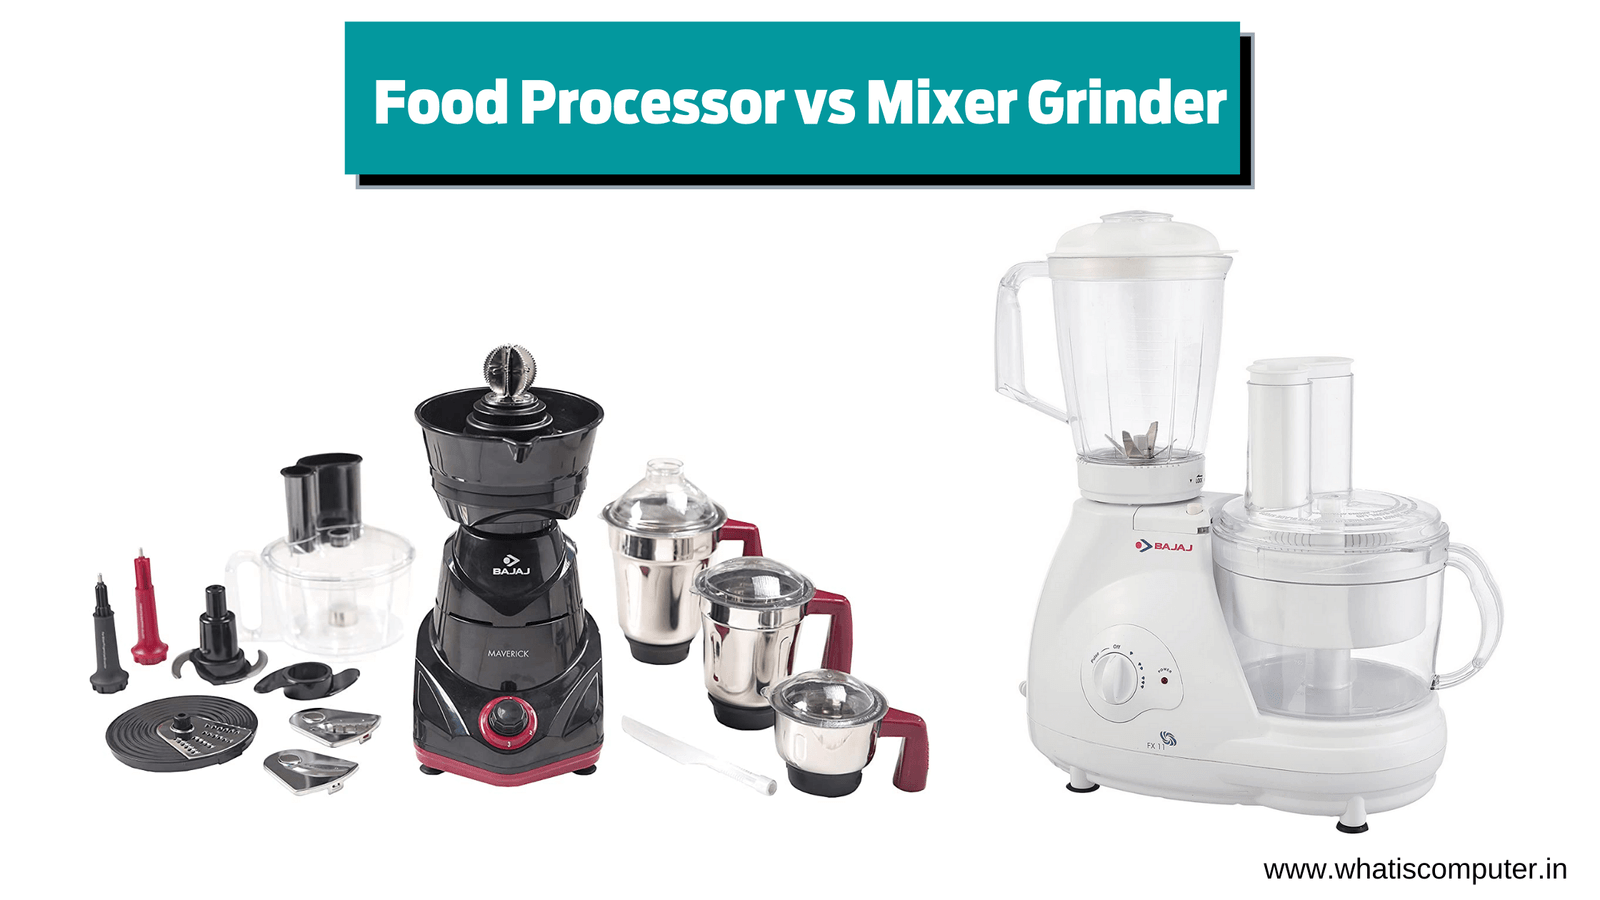 Food Processor vs Mixer Grinder